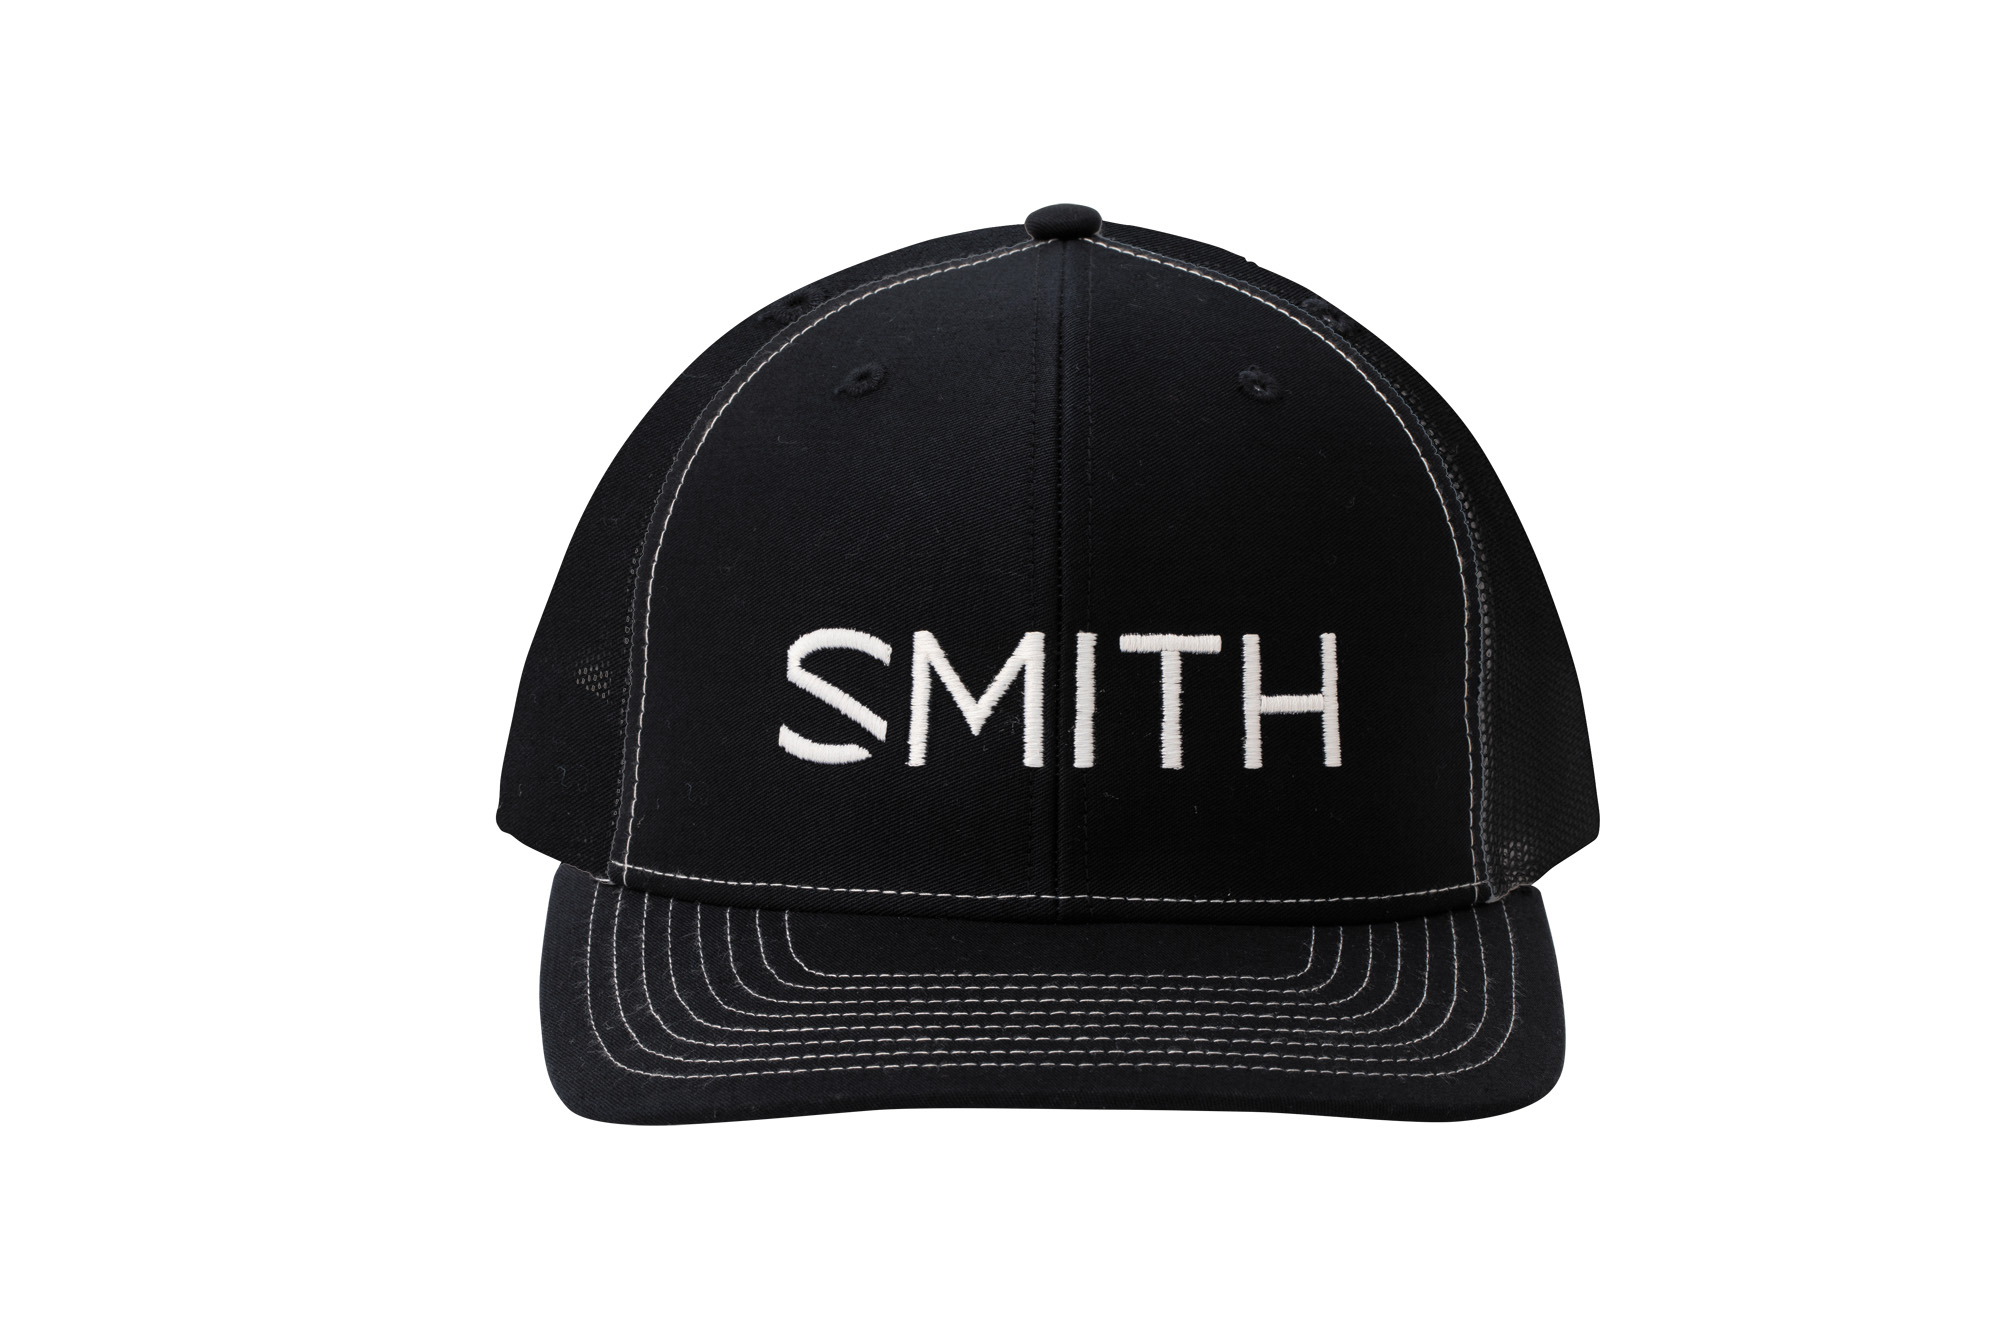 スミス ベースボール キャップ SMITH BASEBALL CAP 野球帽 帽子